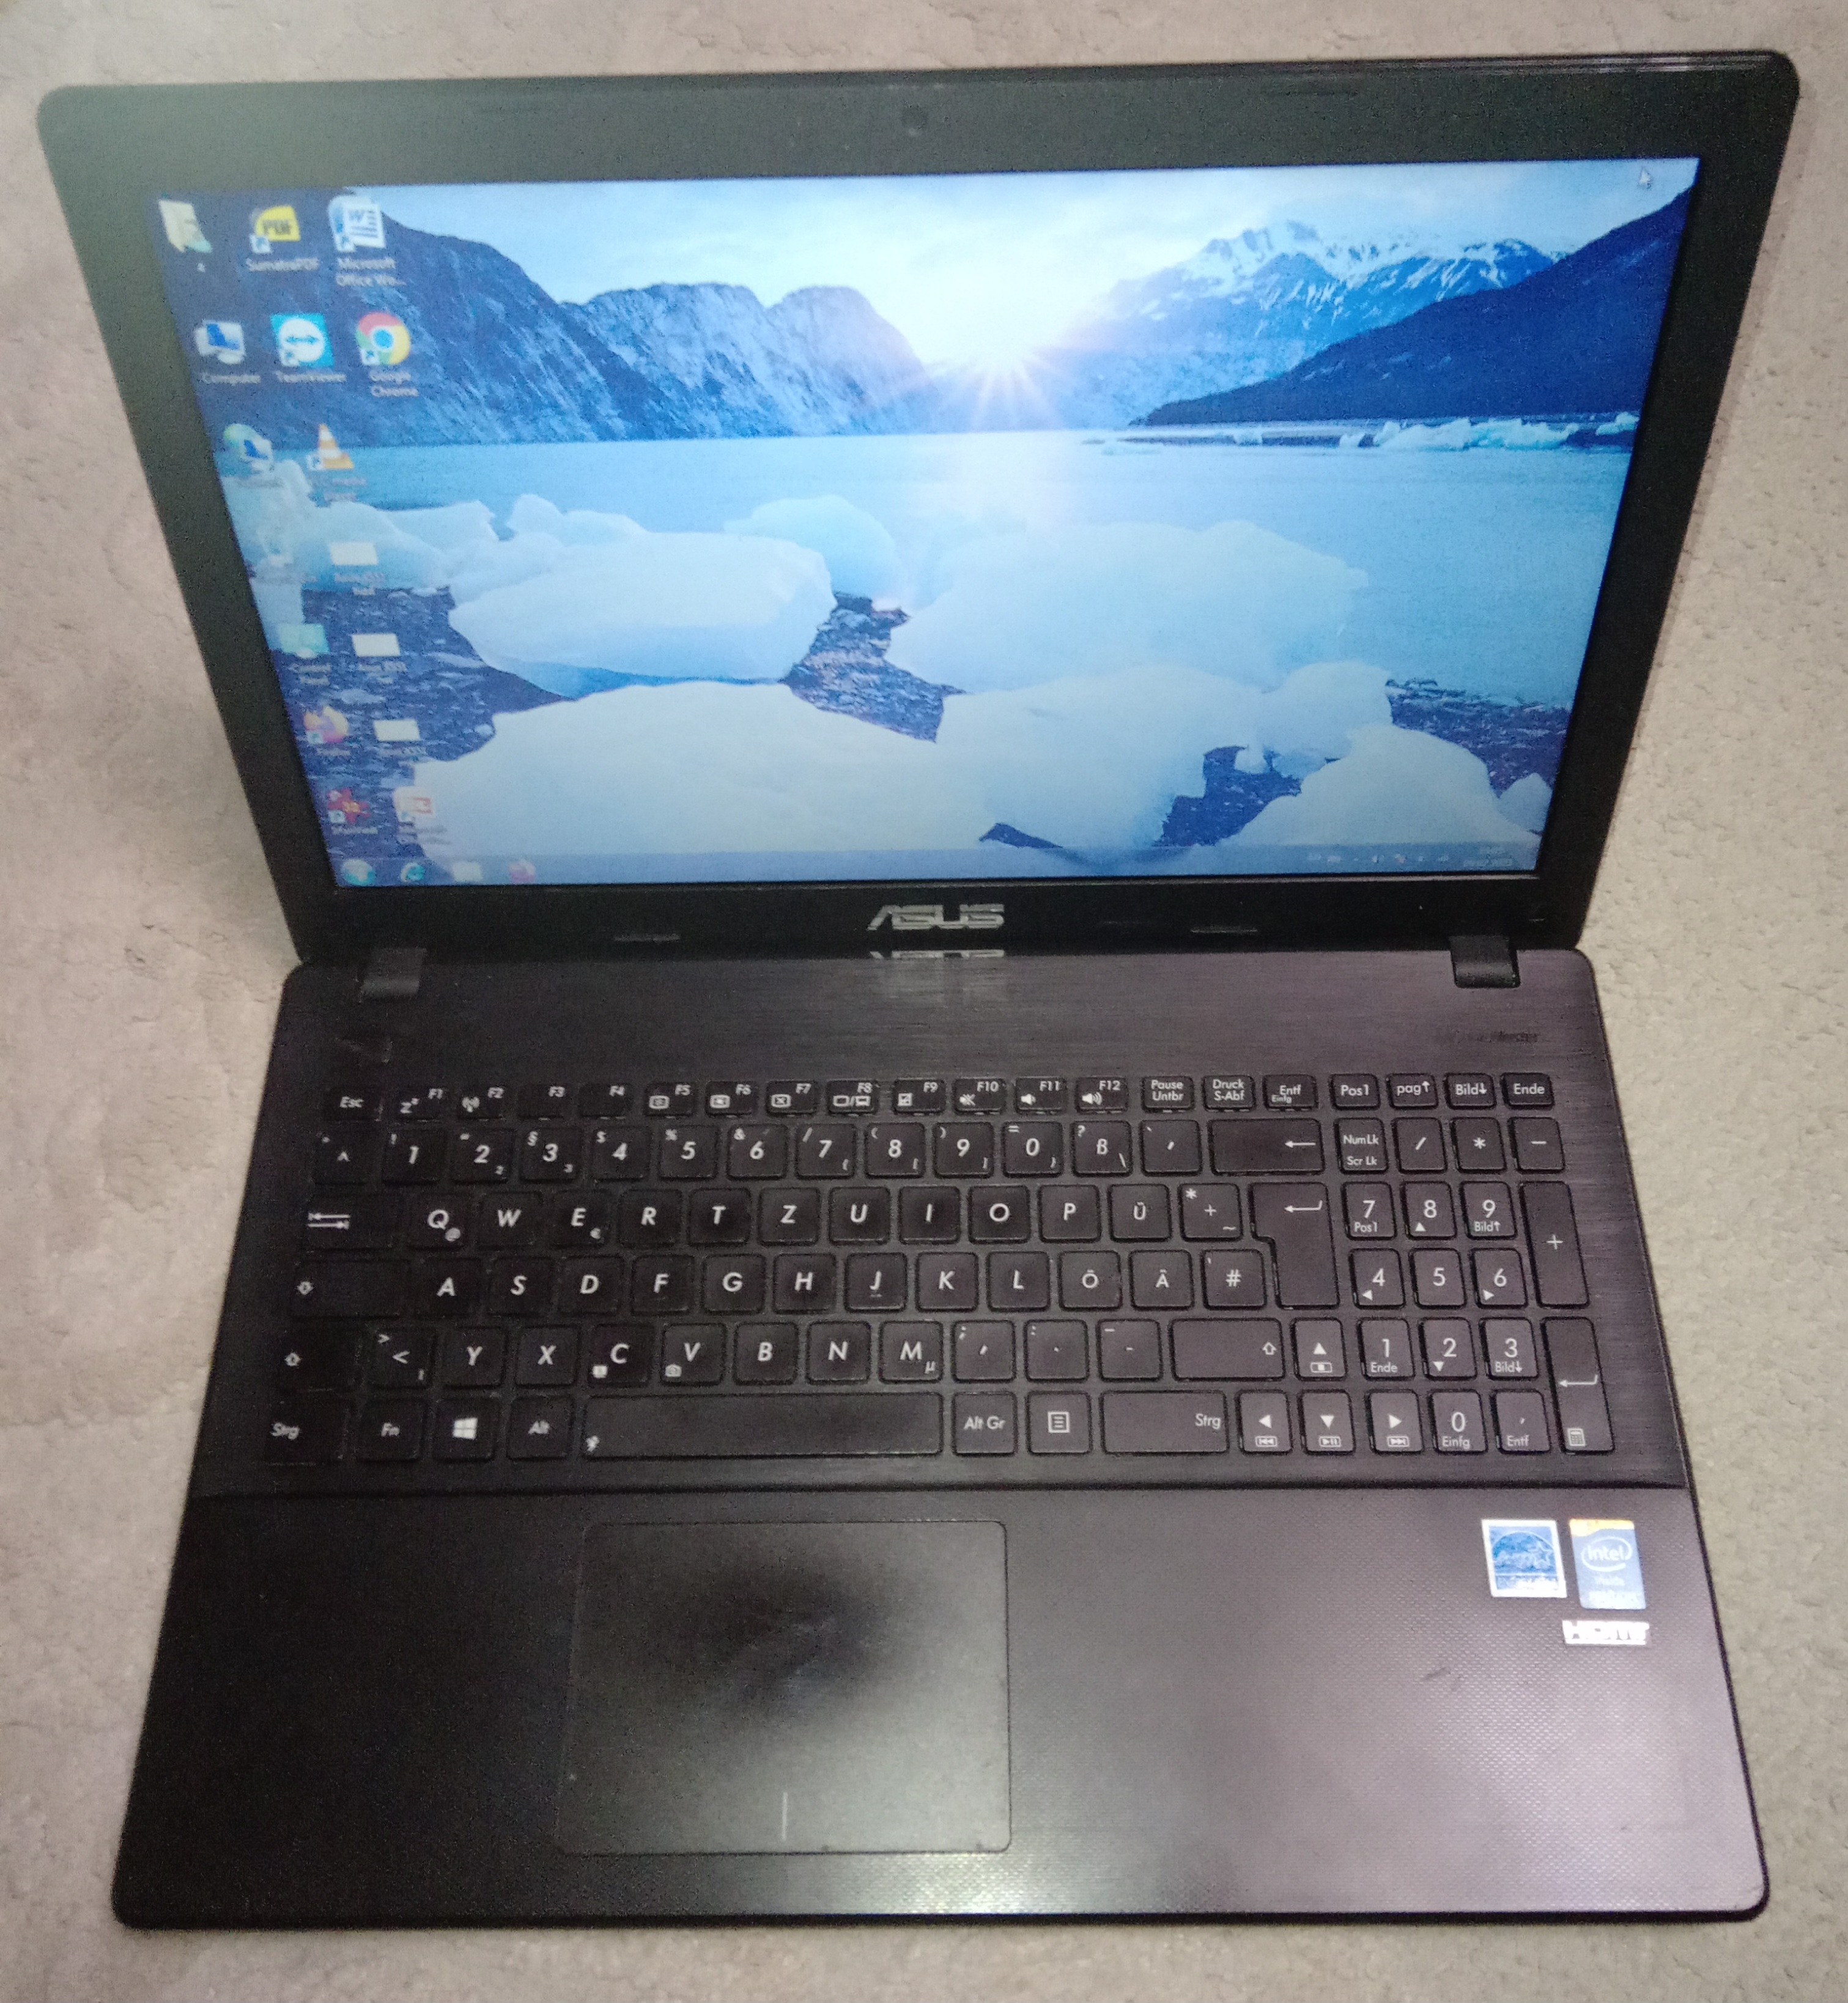 Laptop Asus X551/2117U Dual/4gb ddr3/bat 100min